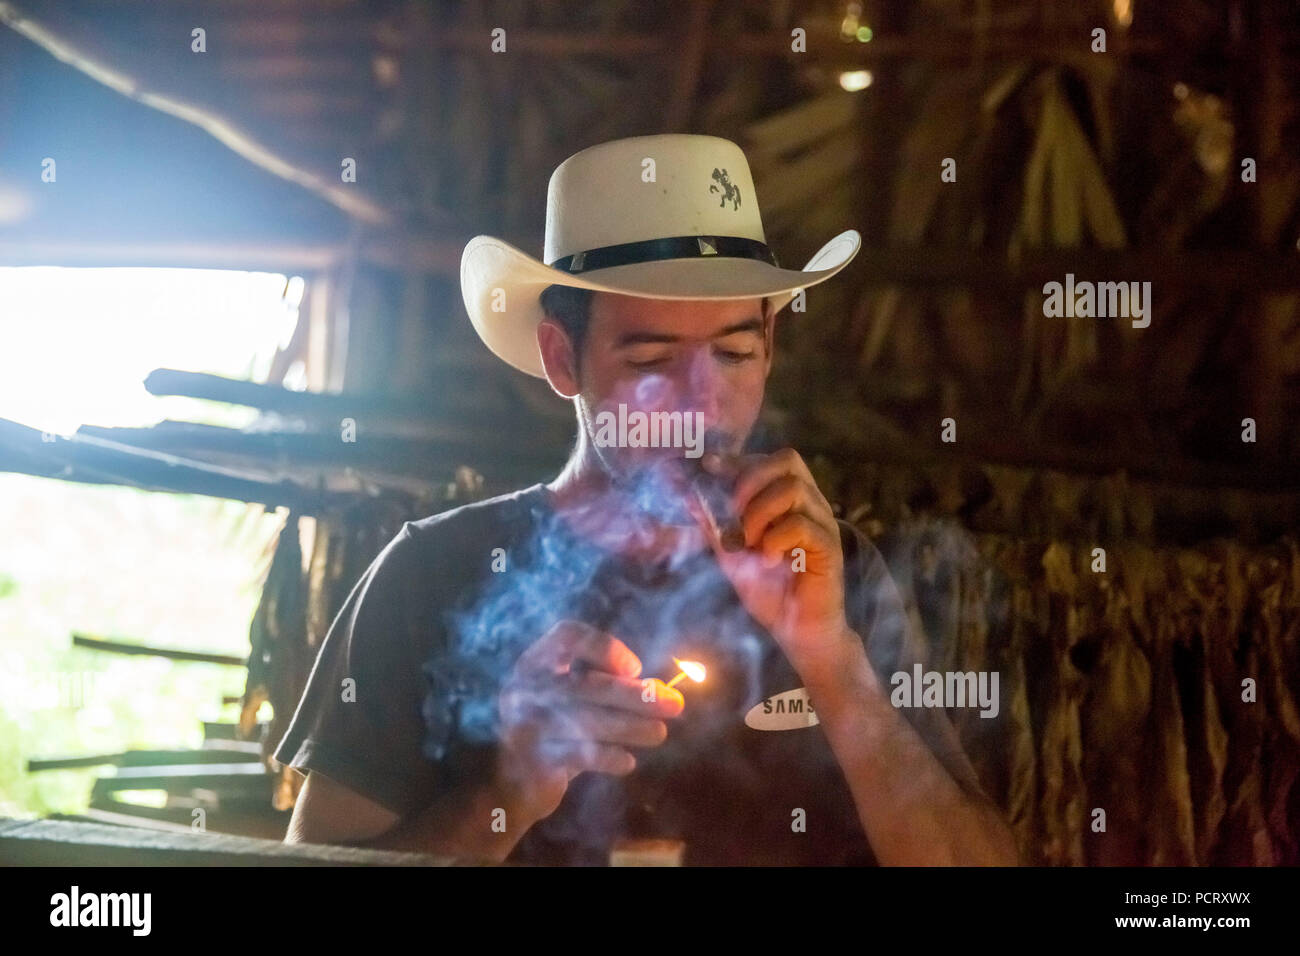 Productores de Tabaco, el tabaco agricultor Luis Manne Alvares Rodrigues enciende un habano, granja de tabaco en Viñales, Valle de Viñales, Cuba, Pinar del Río, Cuba Foto de stock